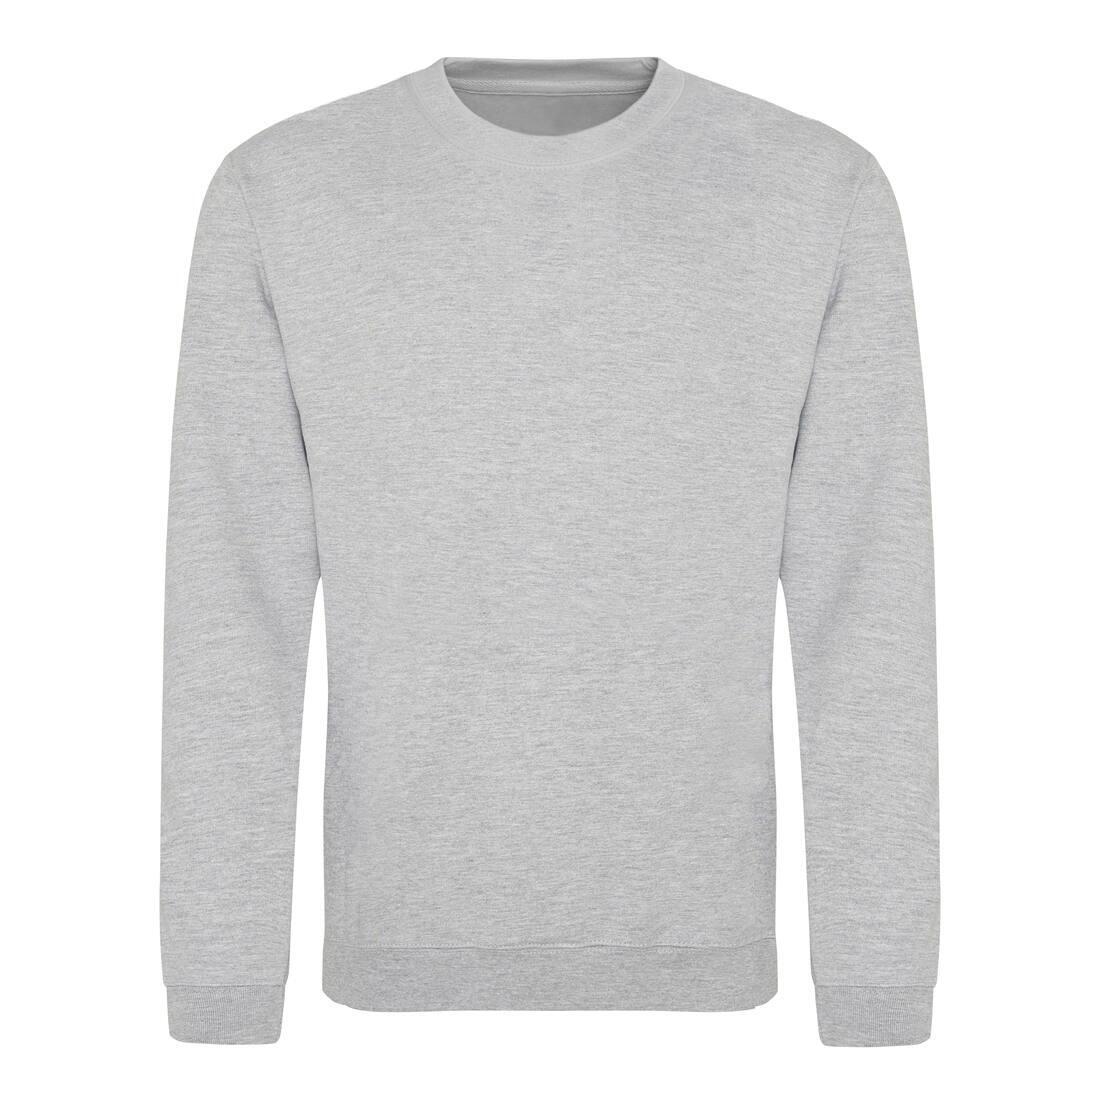 Sweater voor heren heide grijs Just Hoods te personaliseren